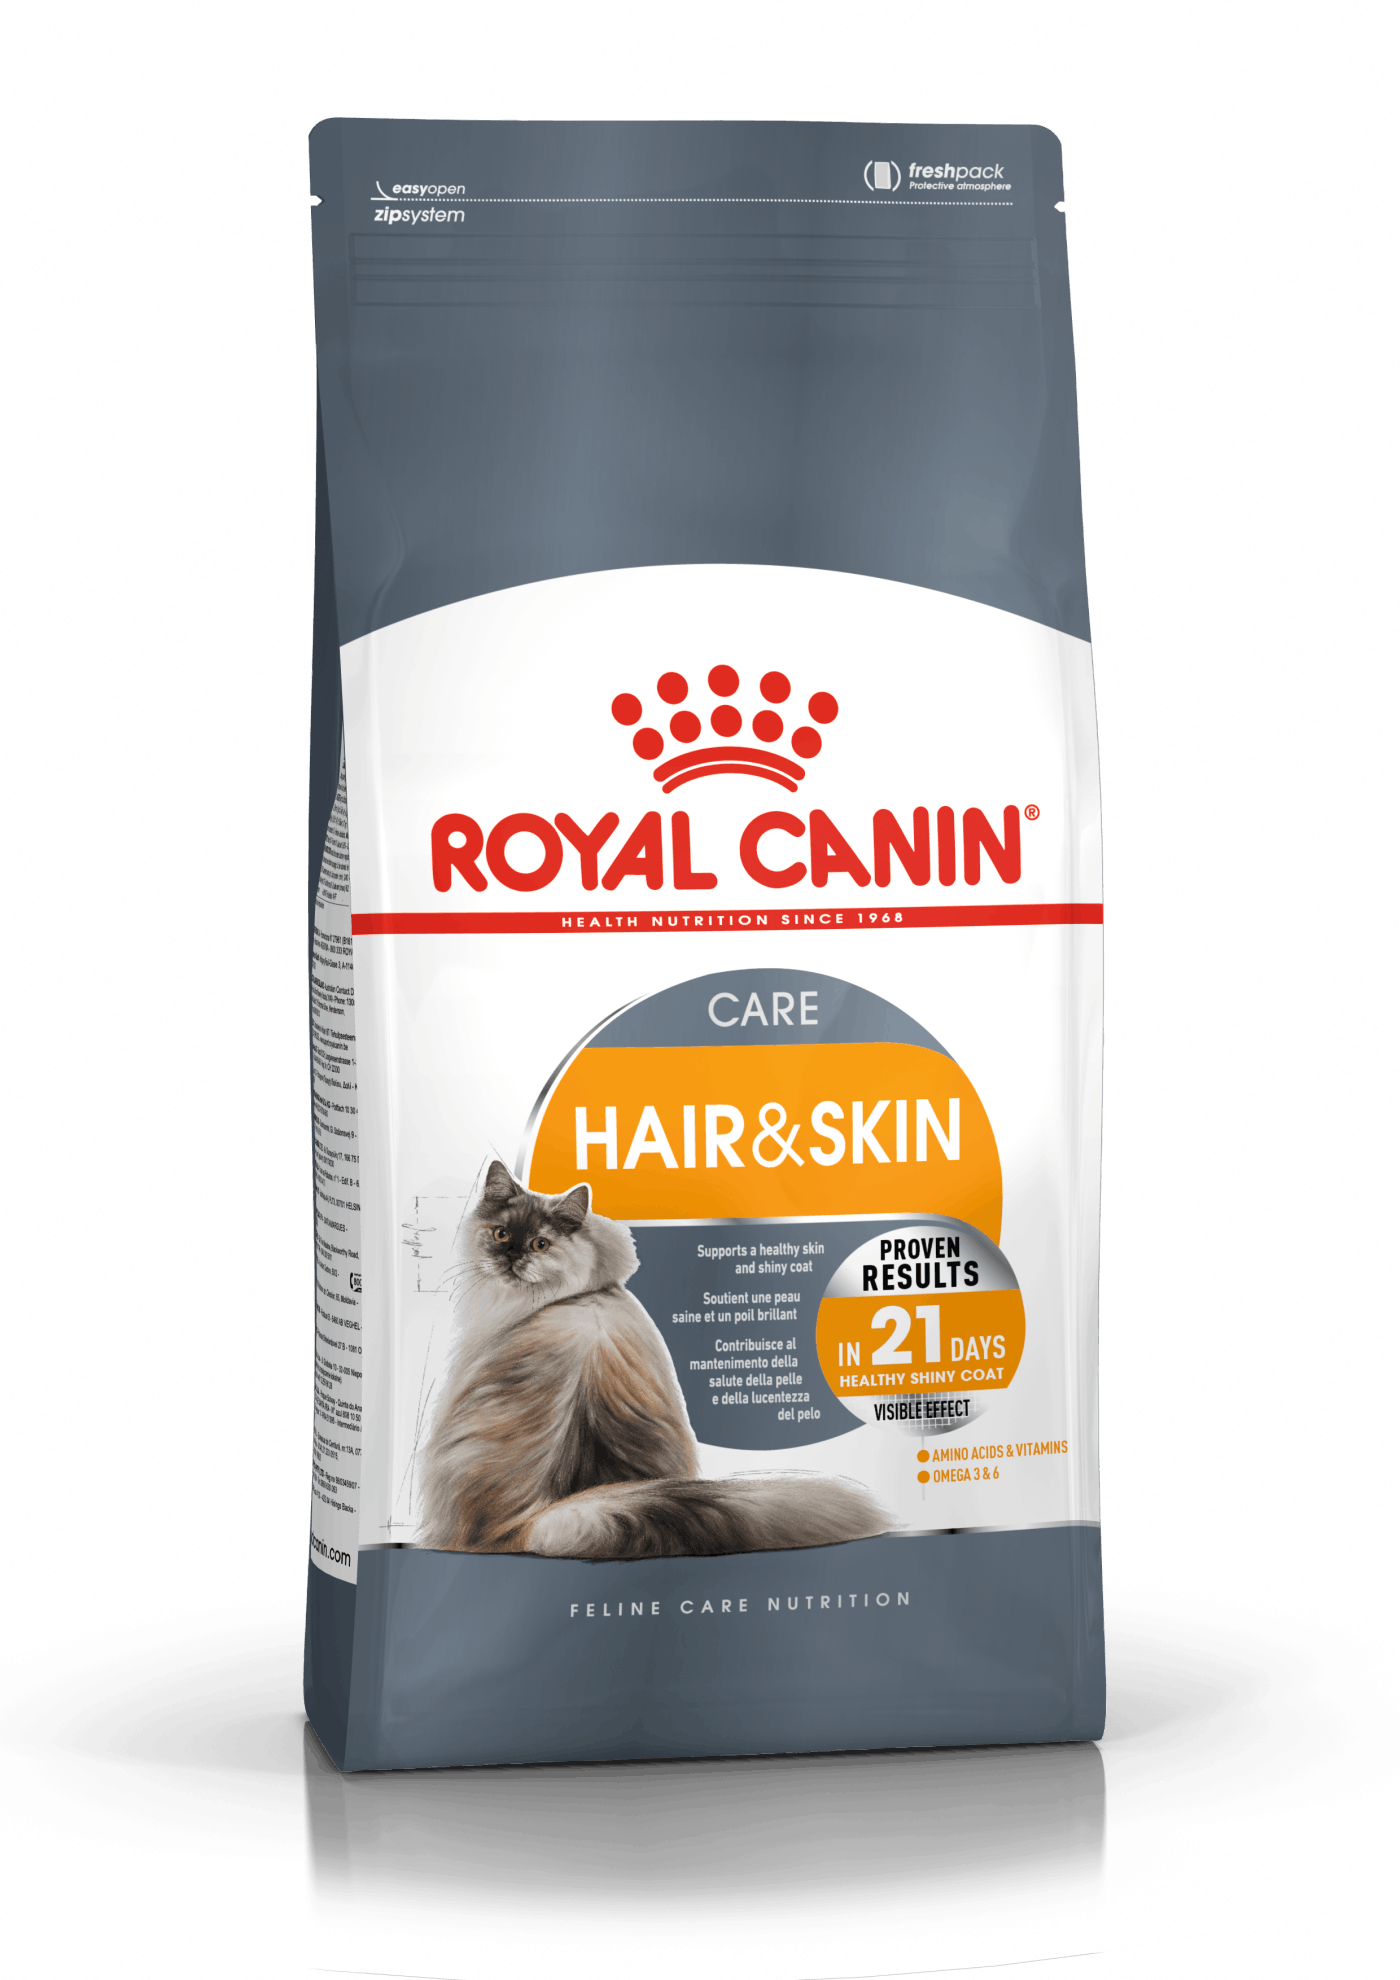 13: Royal Canin Hair & Skin Care. Pleje af kattens pels og hud